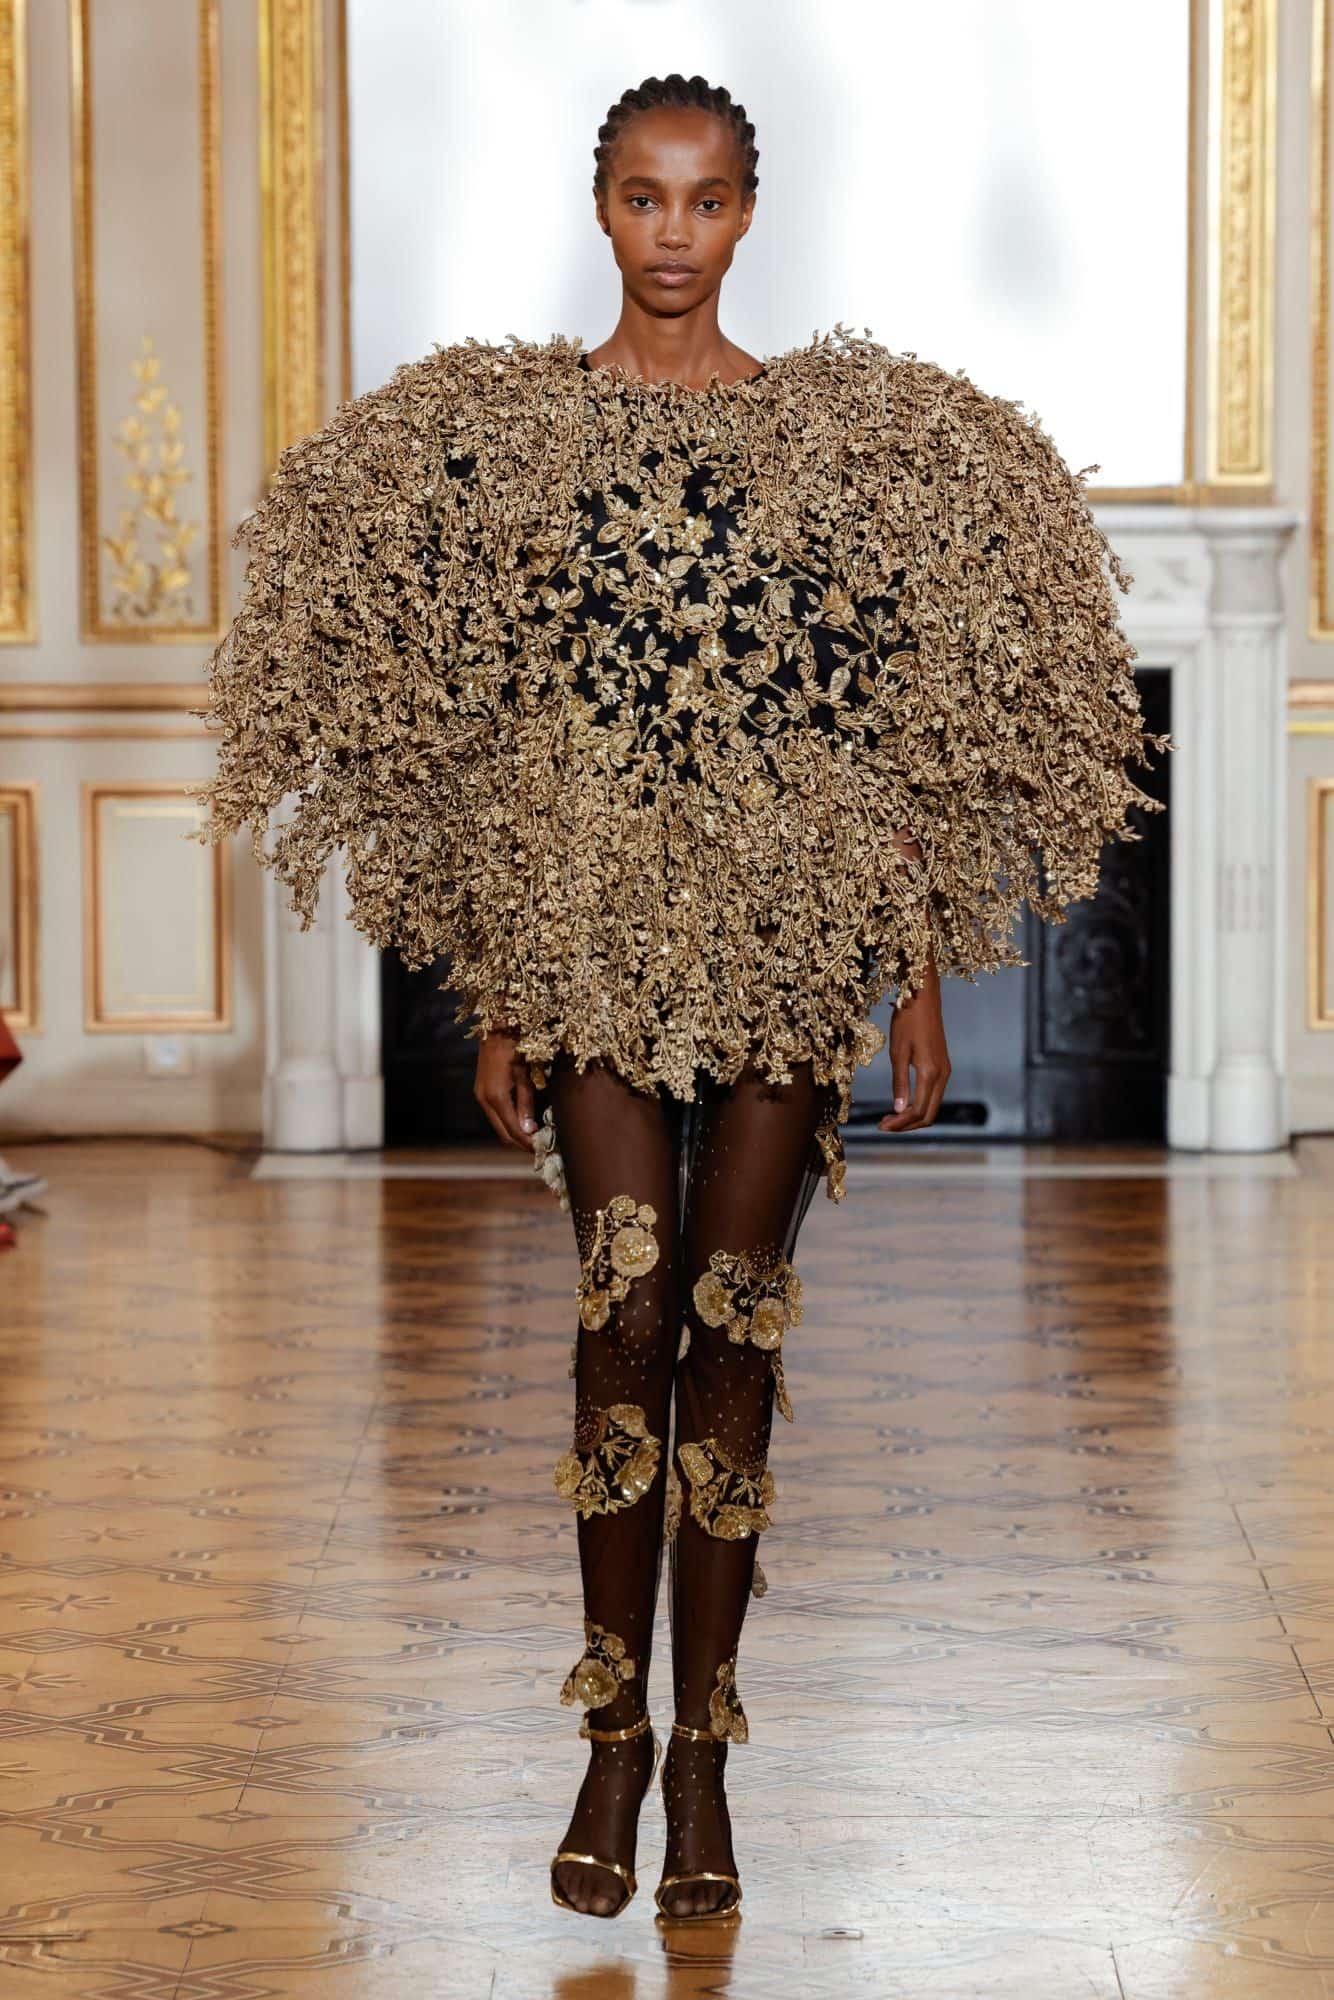 Bush-like drape by Rahul Mishra at Paris Fashion Week 2022.